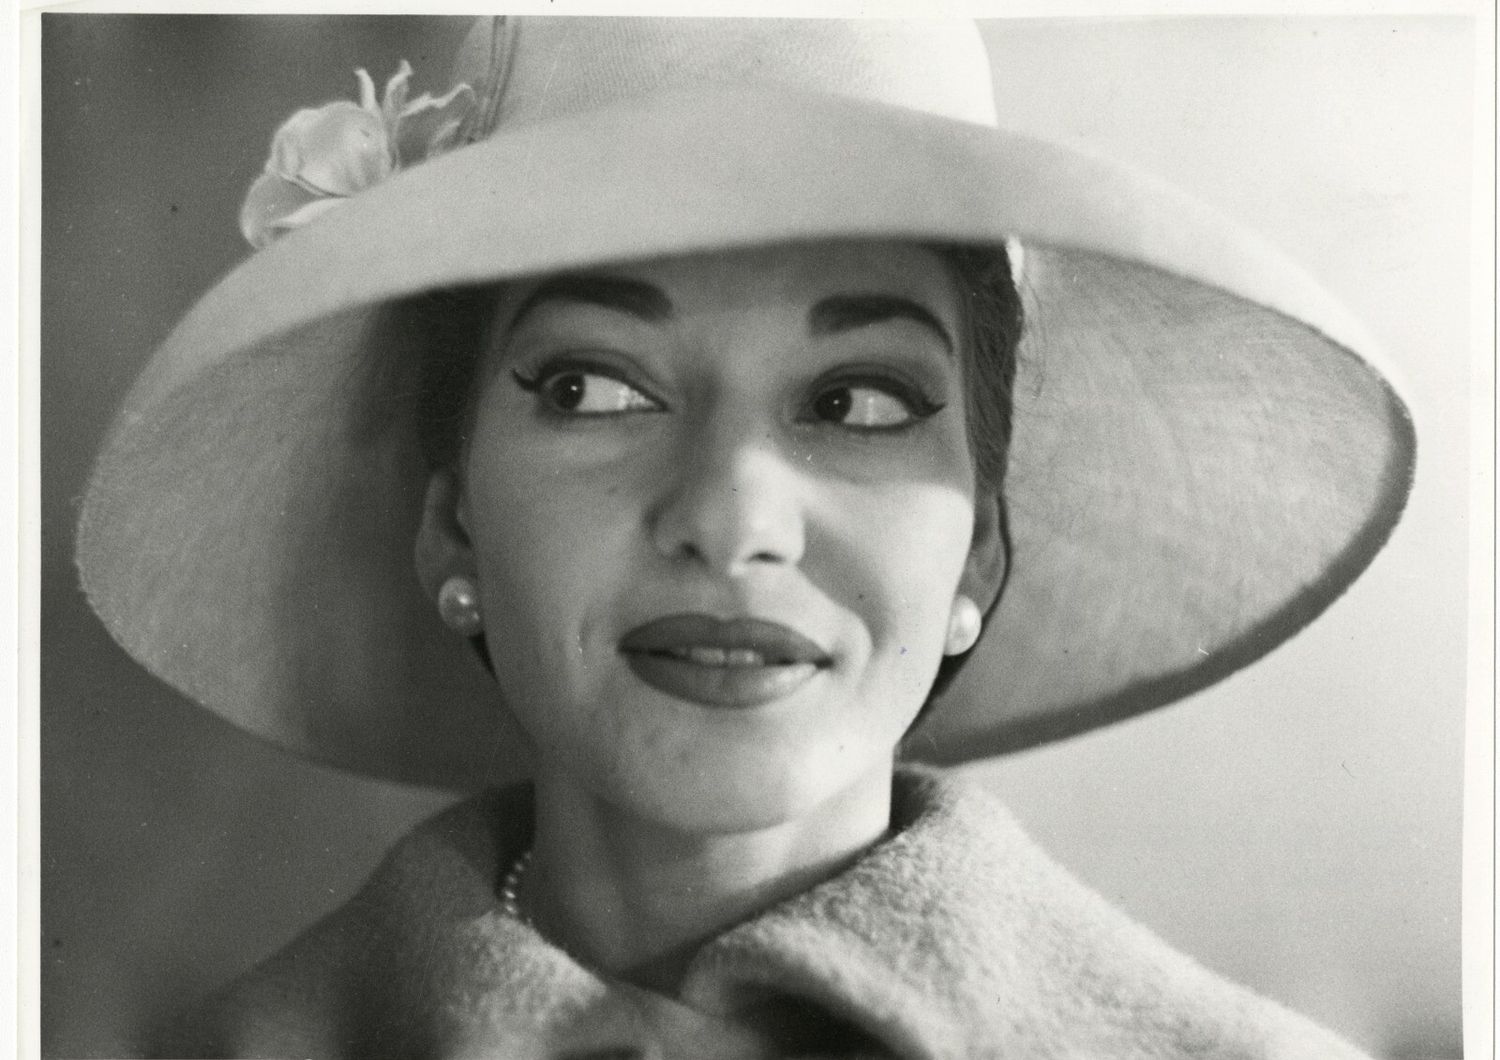 &quot;Milano, aprile 1958. Maria Callas indossa abiti della sartoria BIKI nella sua abitazione.